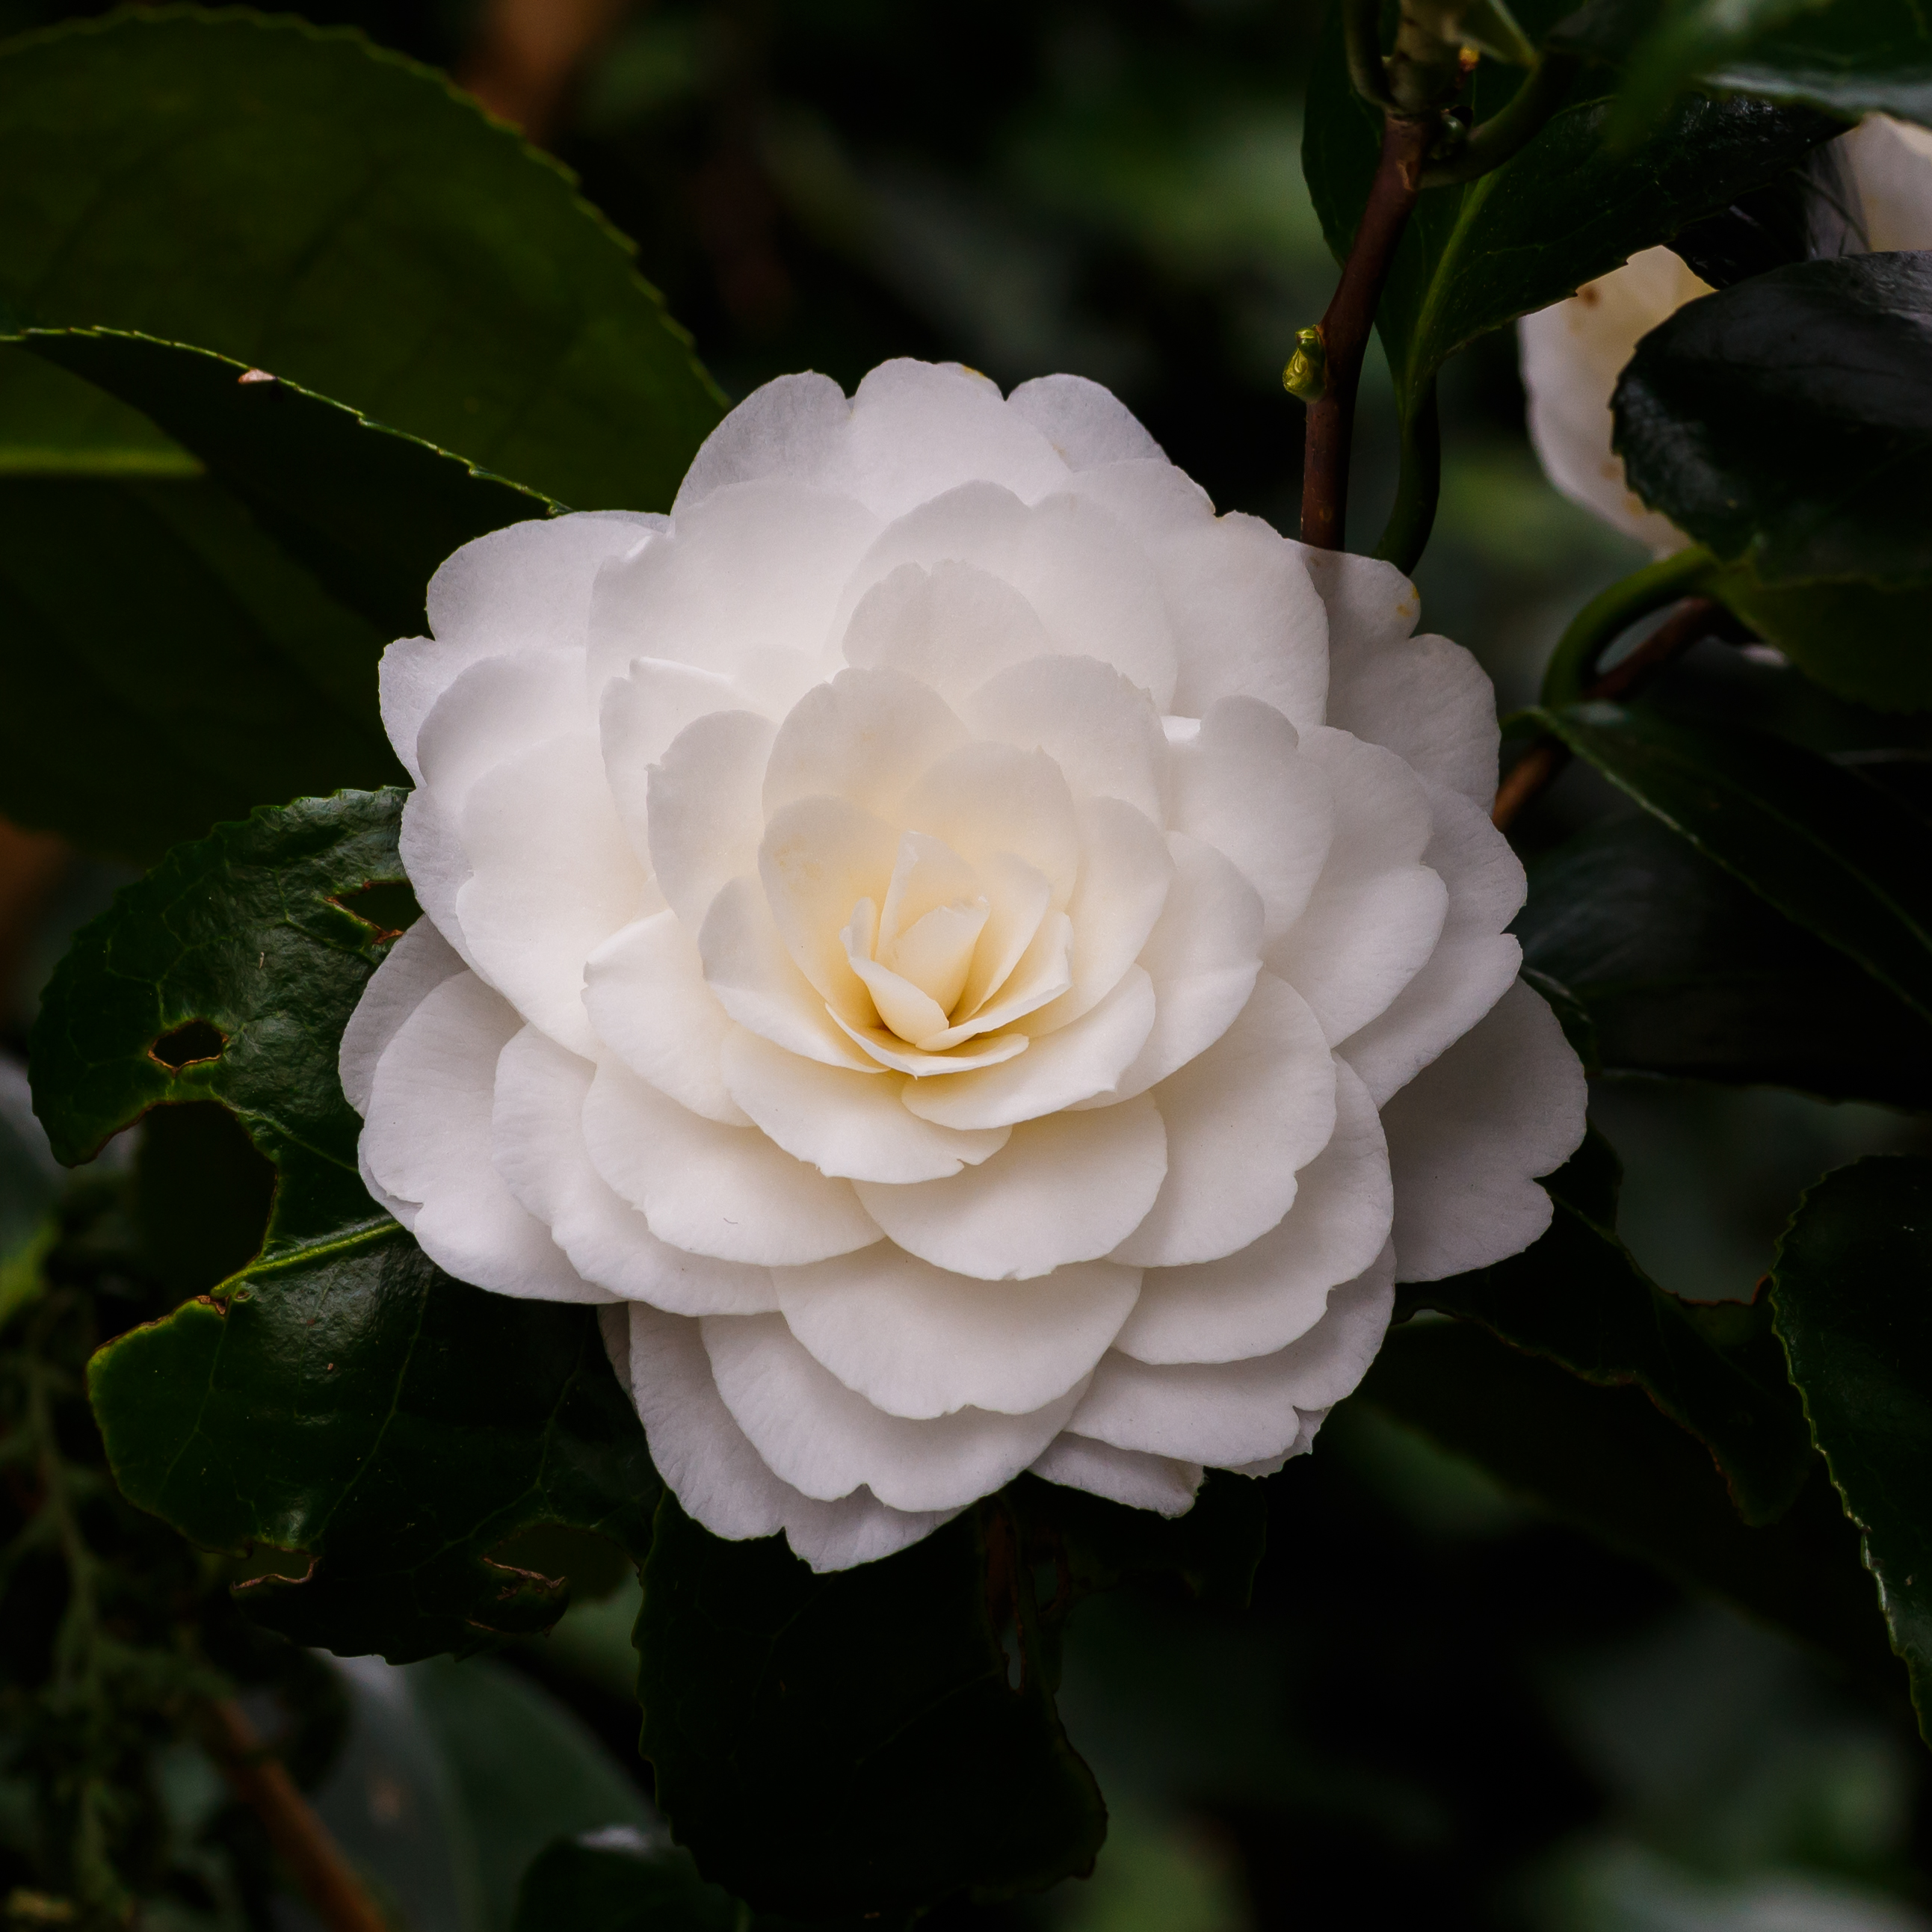 Tere schoonheid van de Camellia × williamsii 'Jury's Yellow' bloem. Locatie, Tuinreservaat Jonker vallei 04